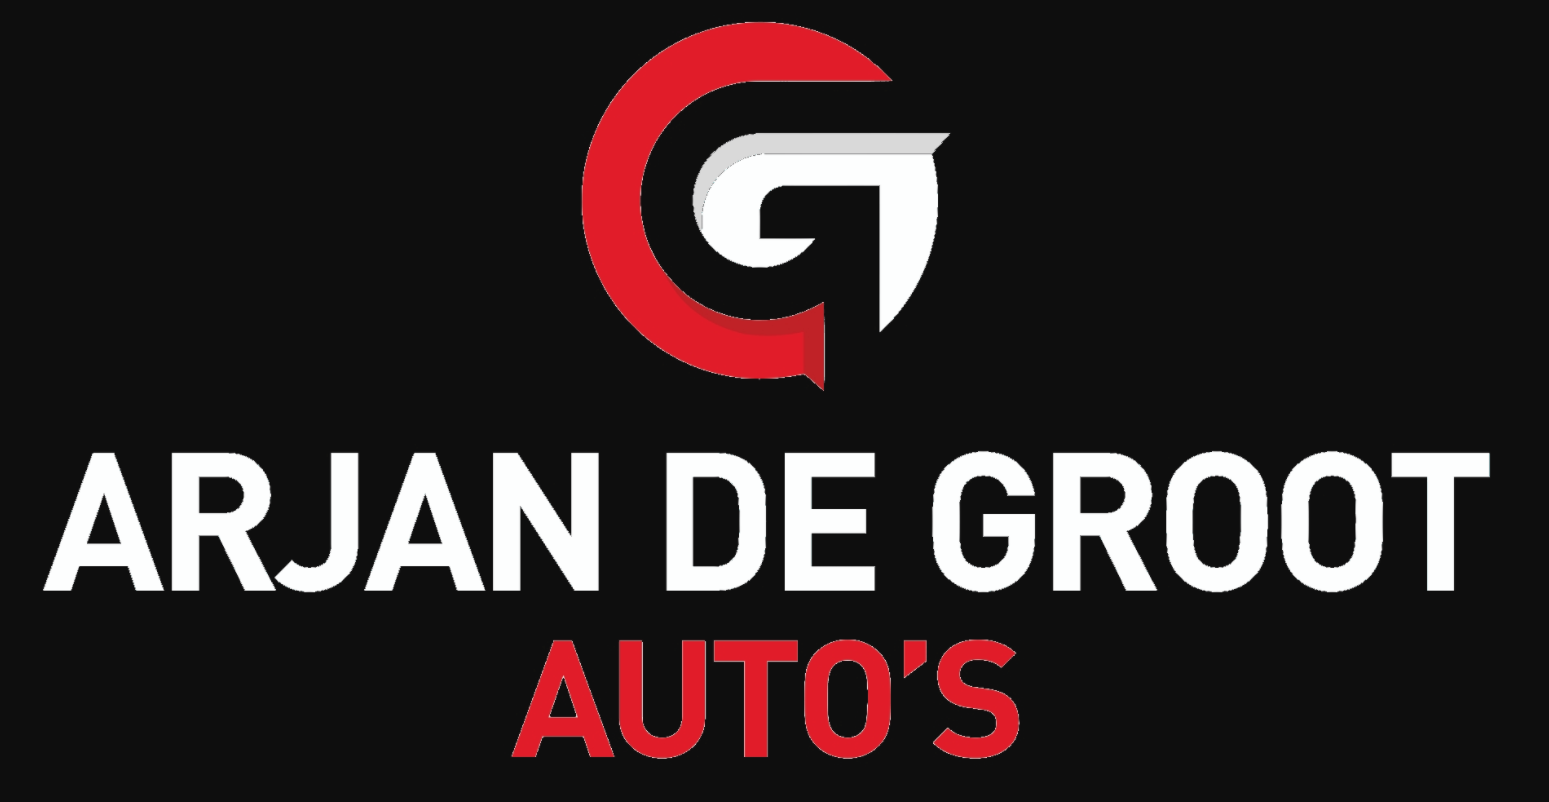 Arjan de Groot auto's logo